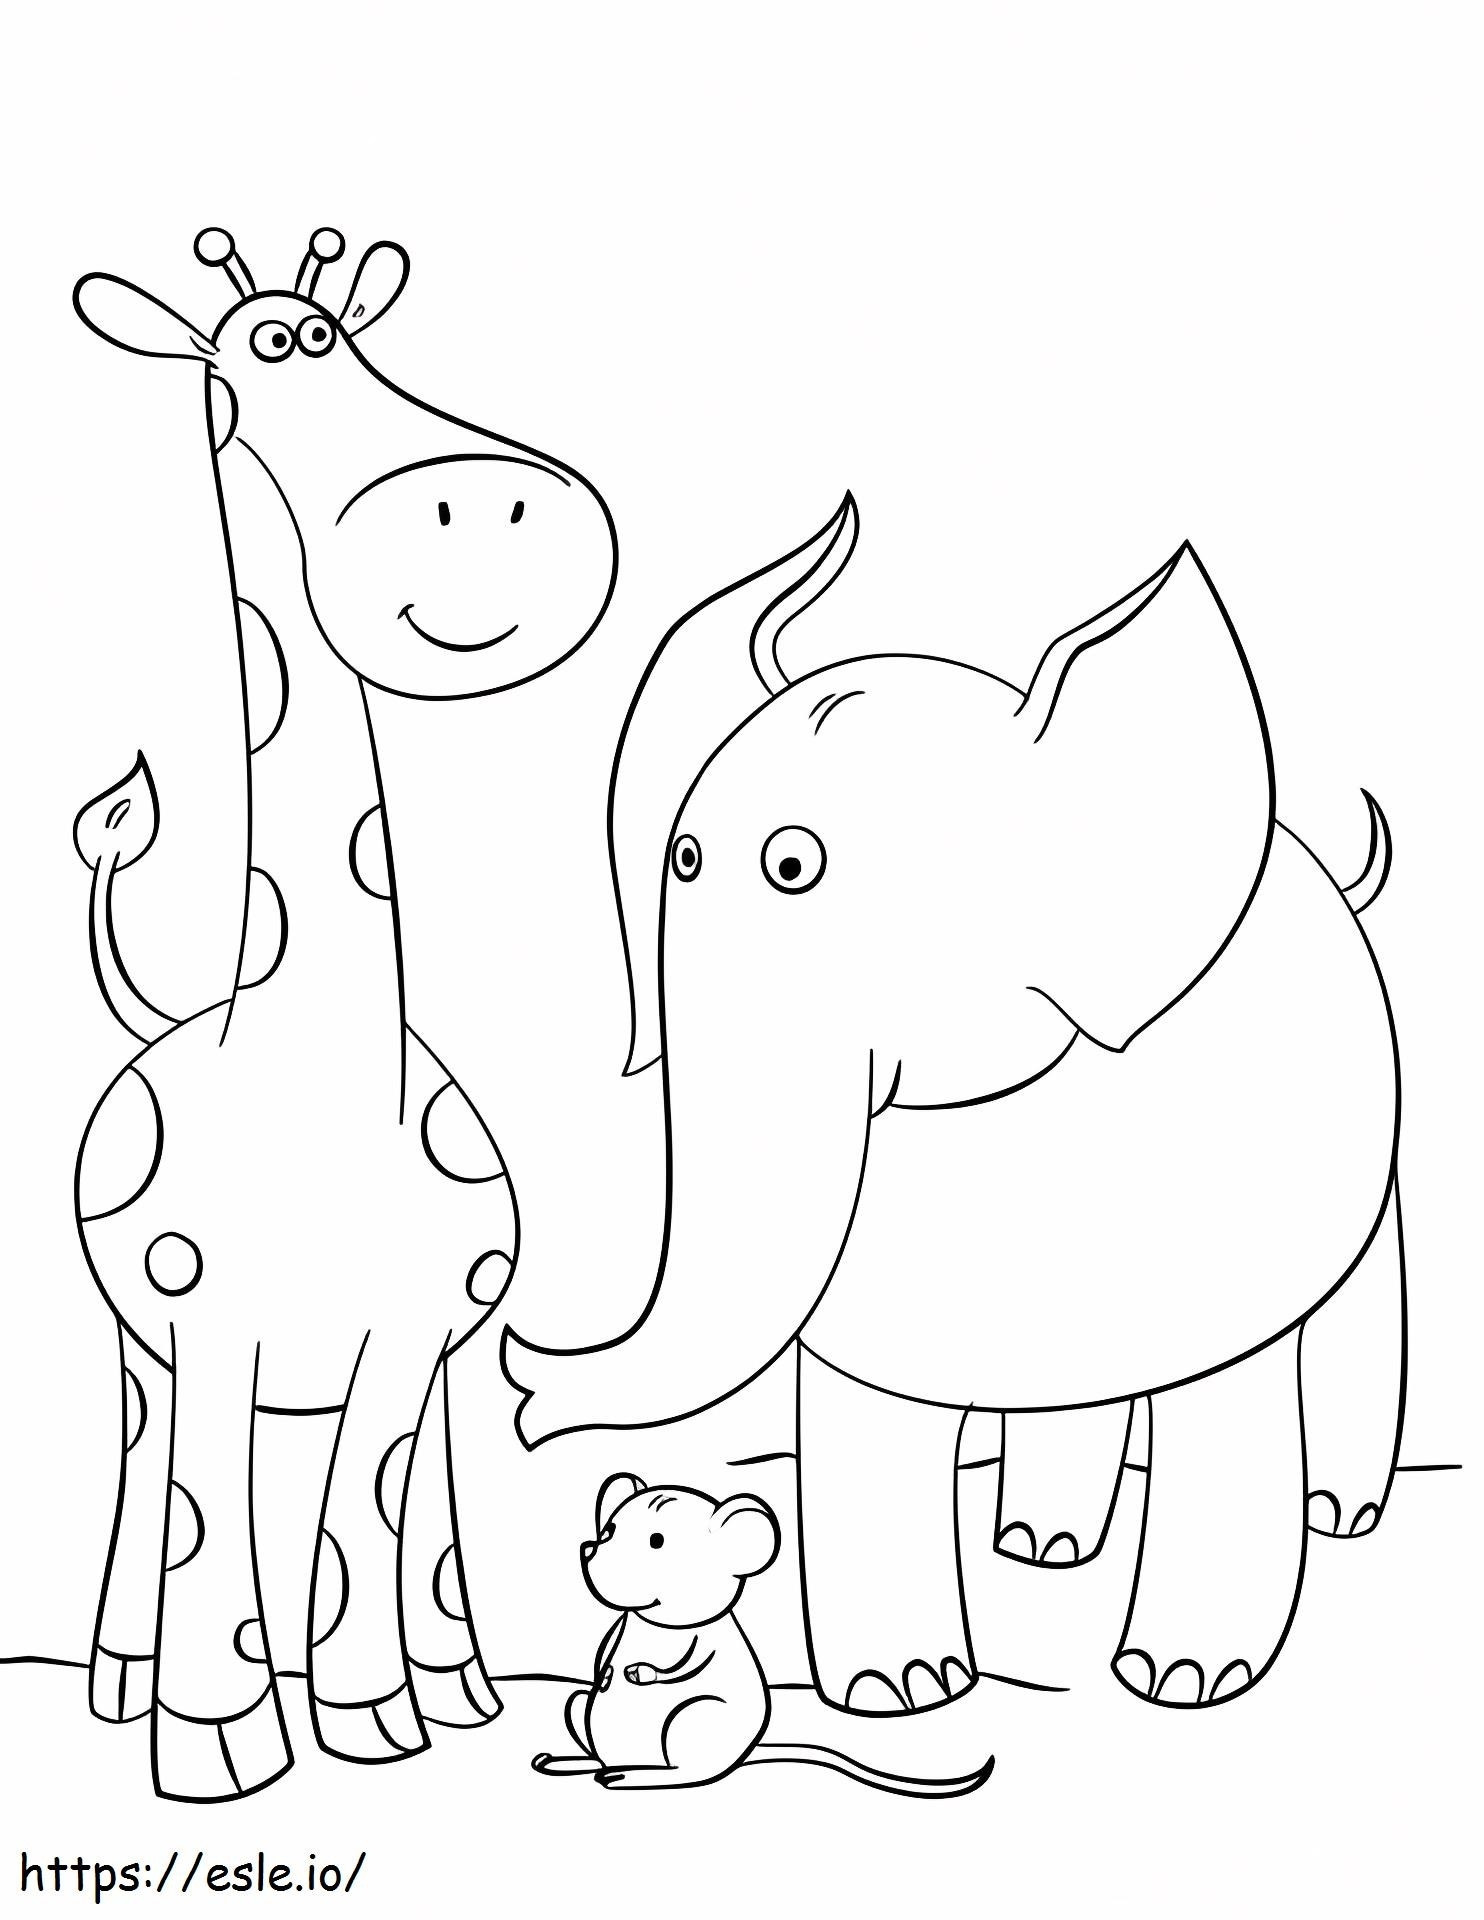 1529035334 Giraffenmaus und Elefant ausmalbilder